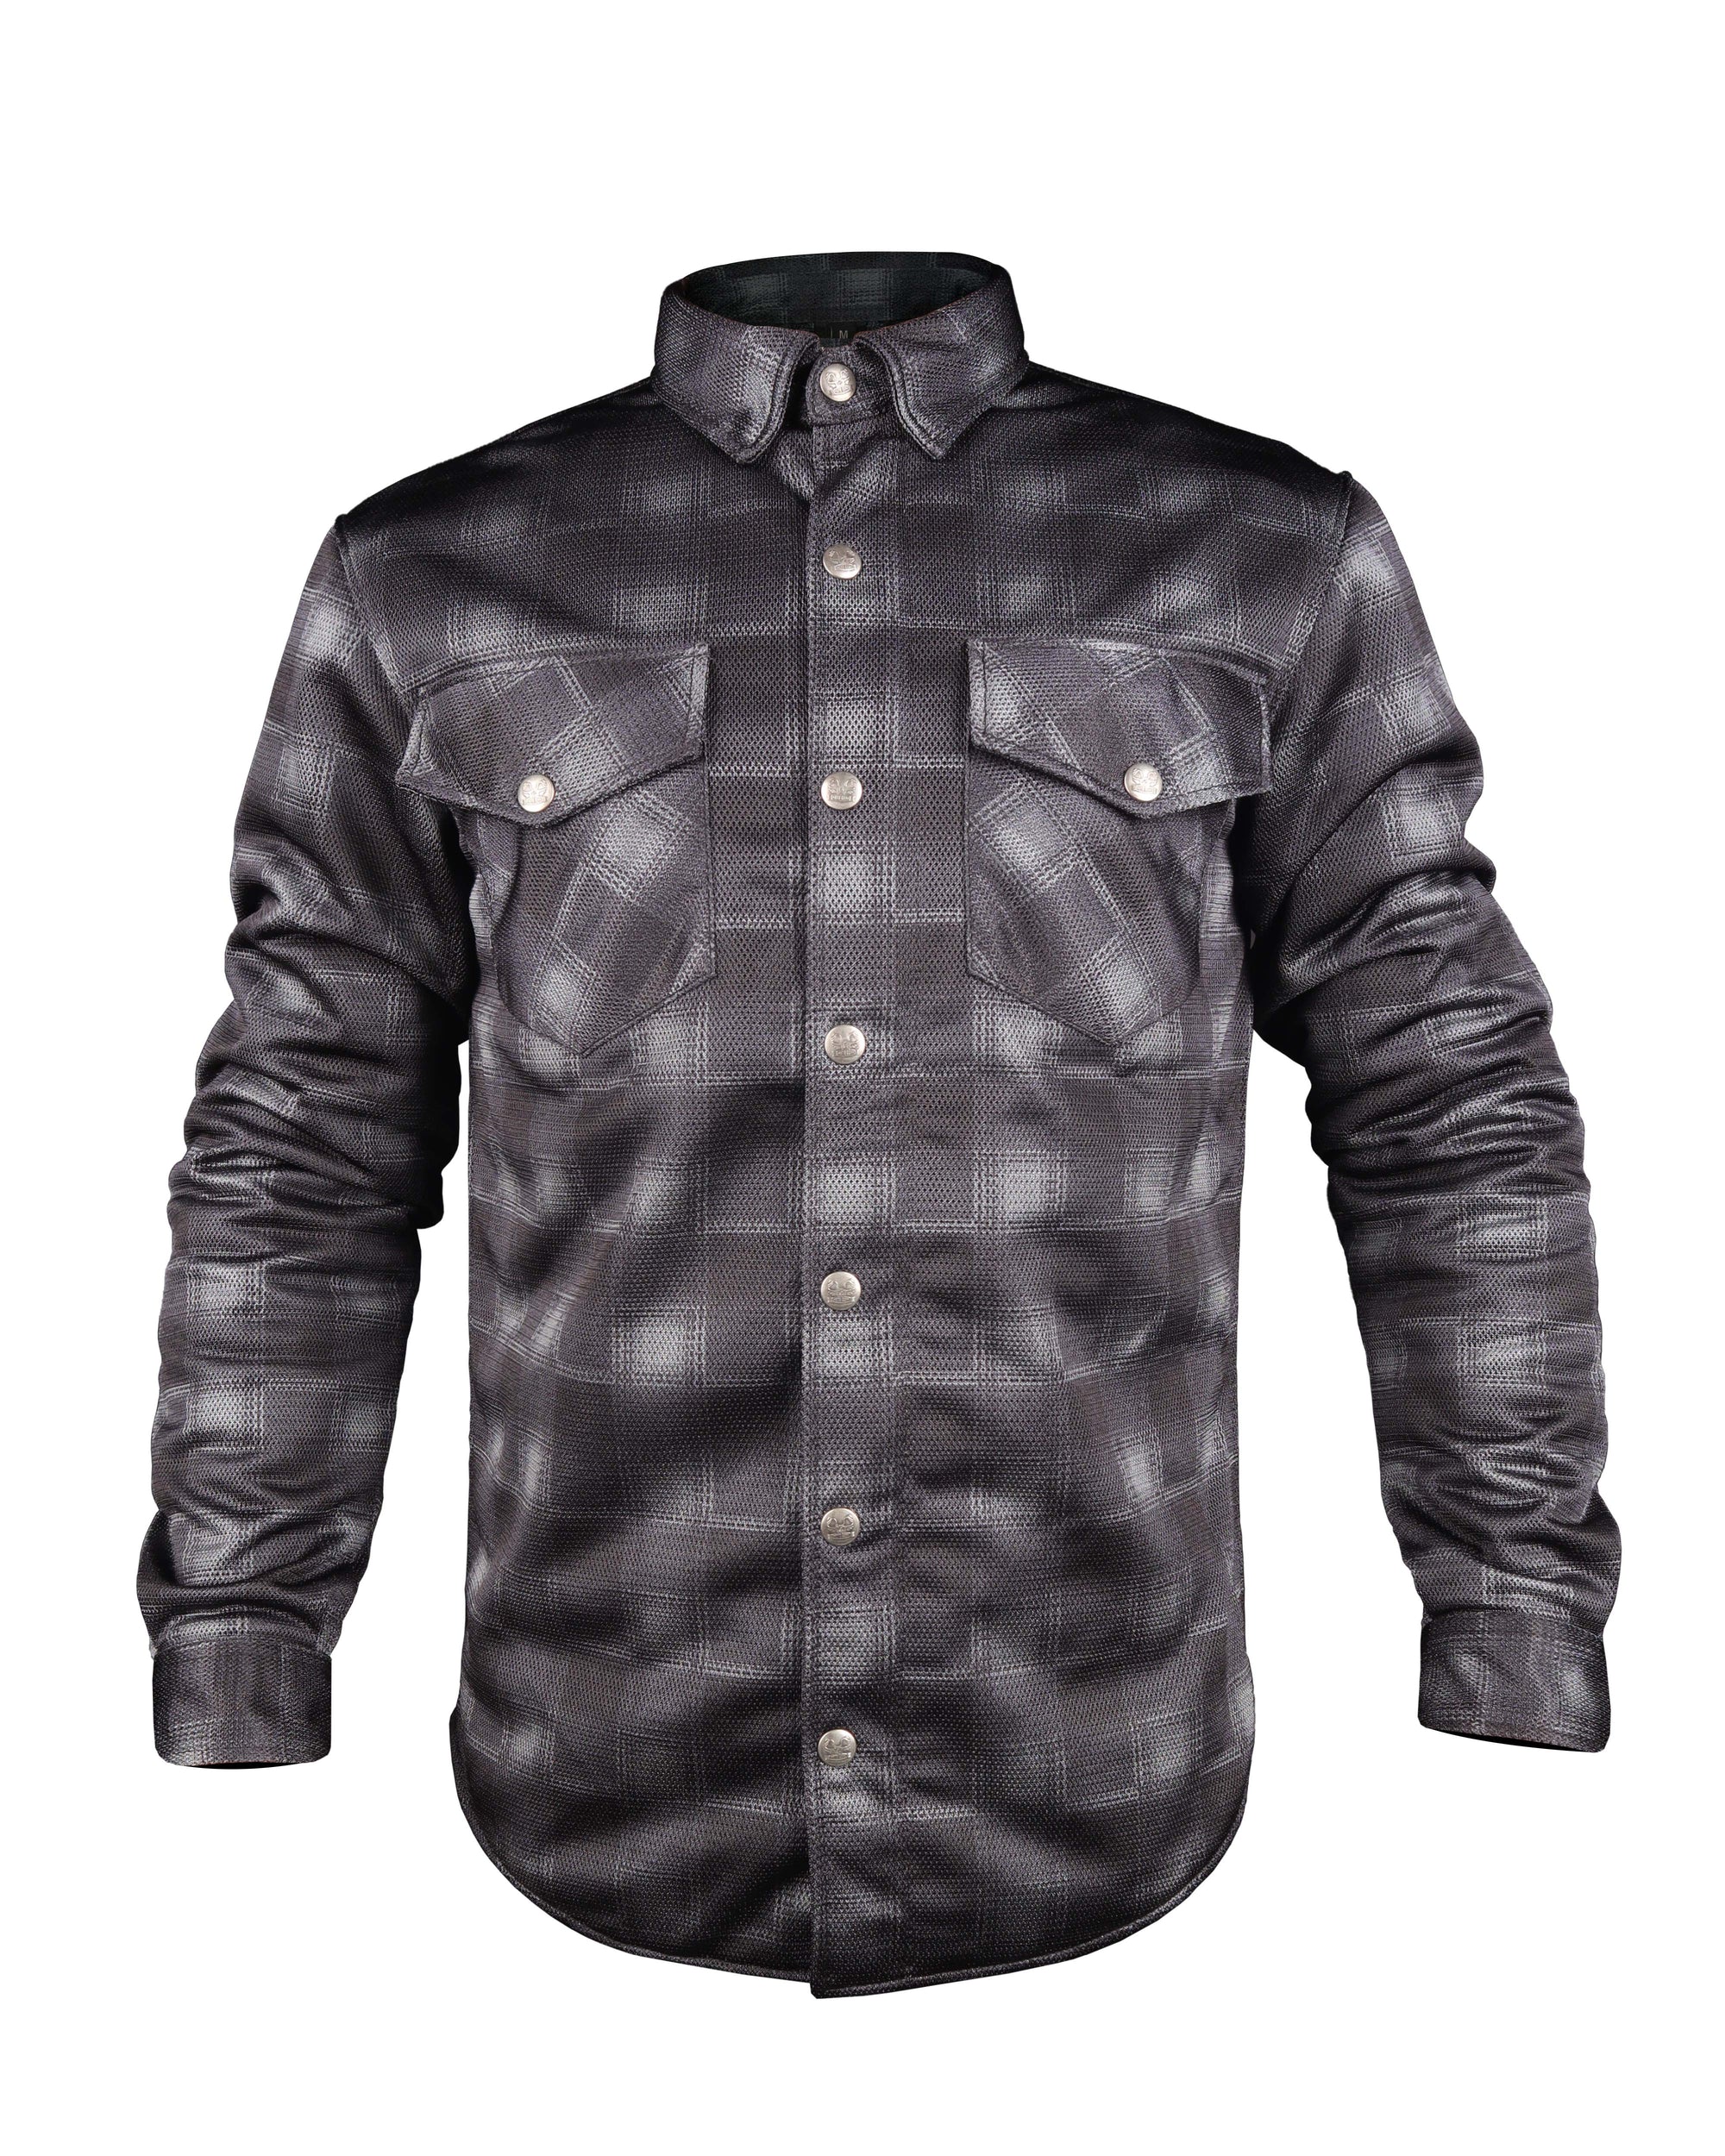 Grey & Black Check Mesh Shirt